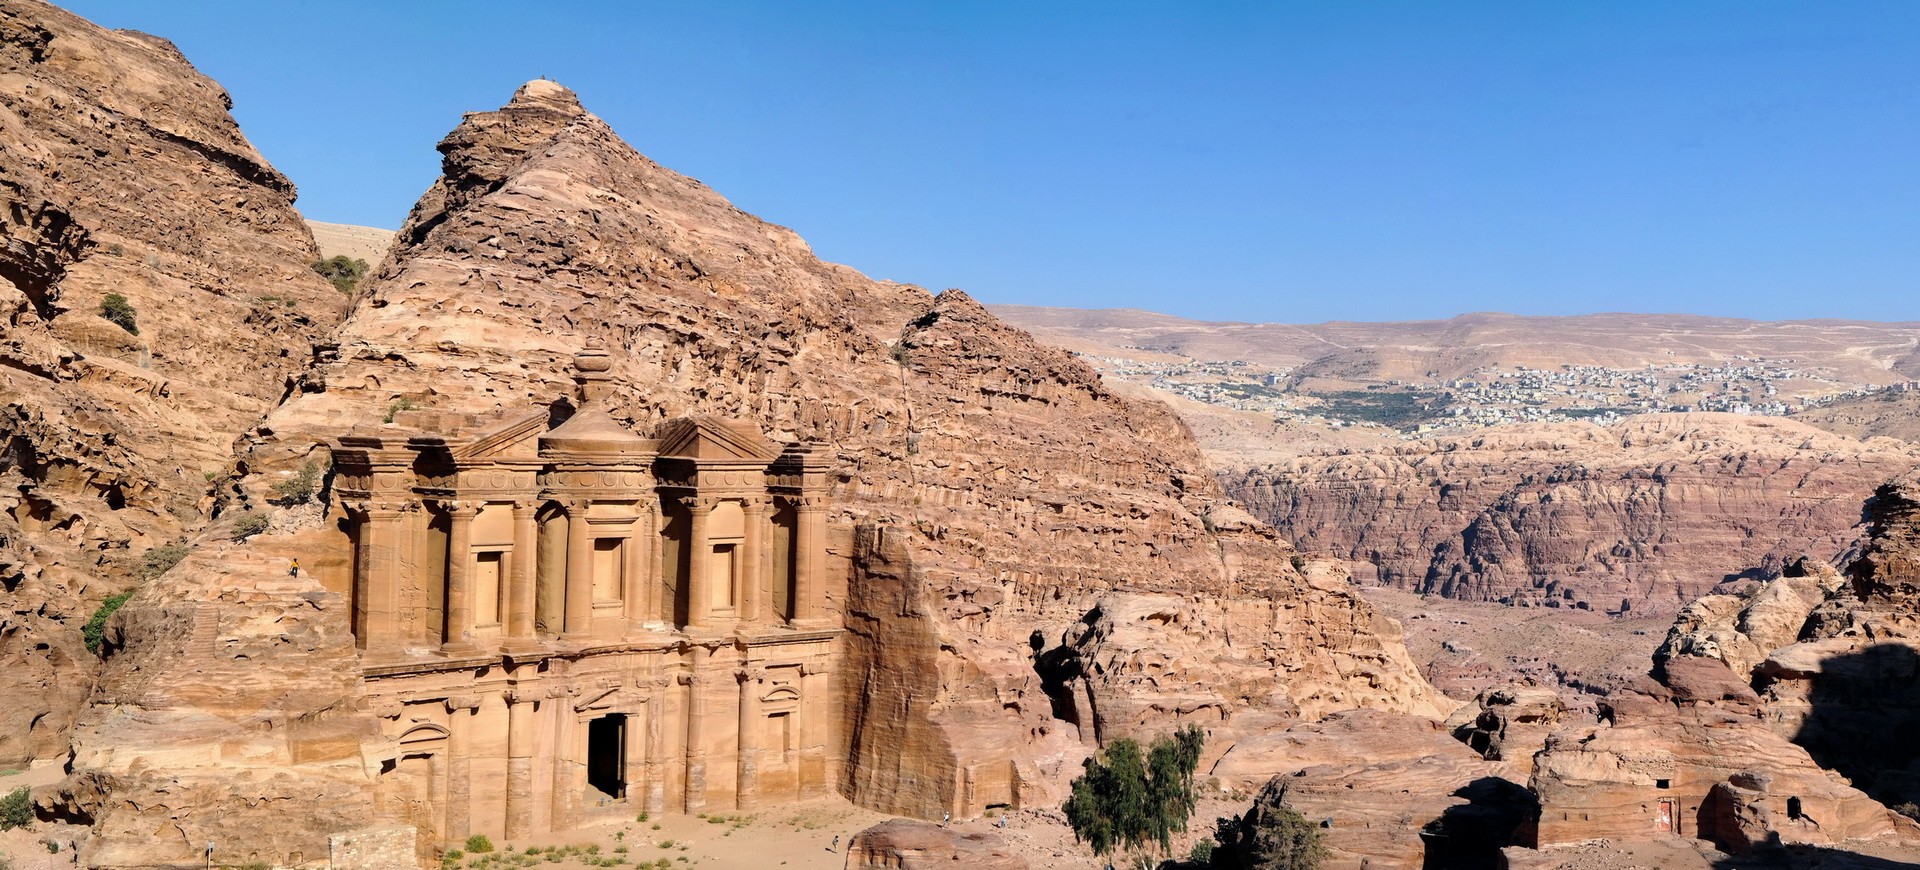 Jordanie Petra site antique Nabatéenne